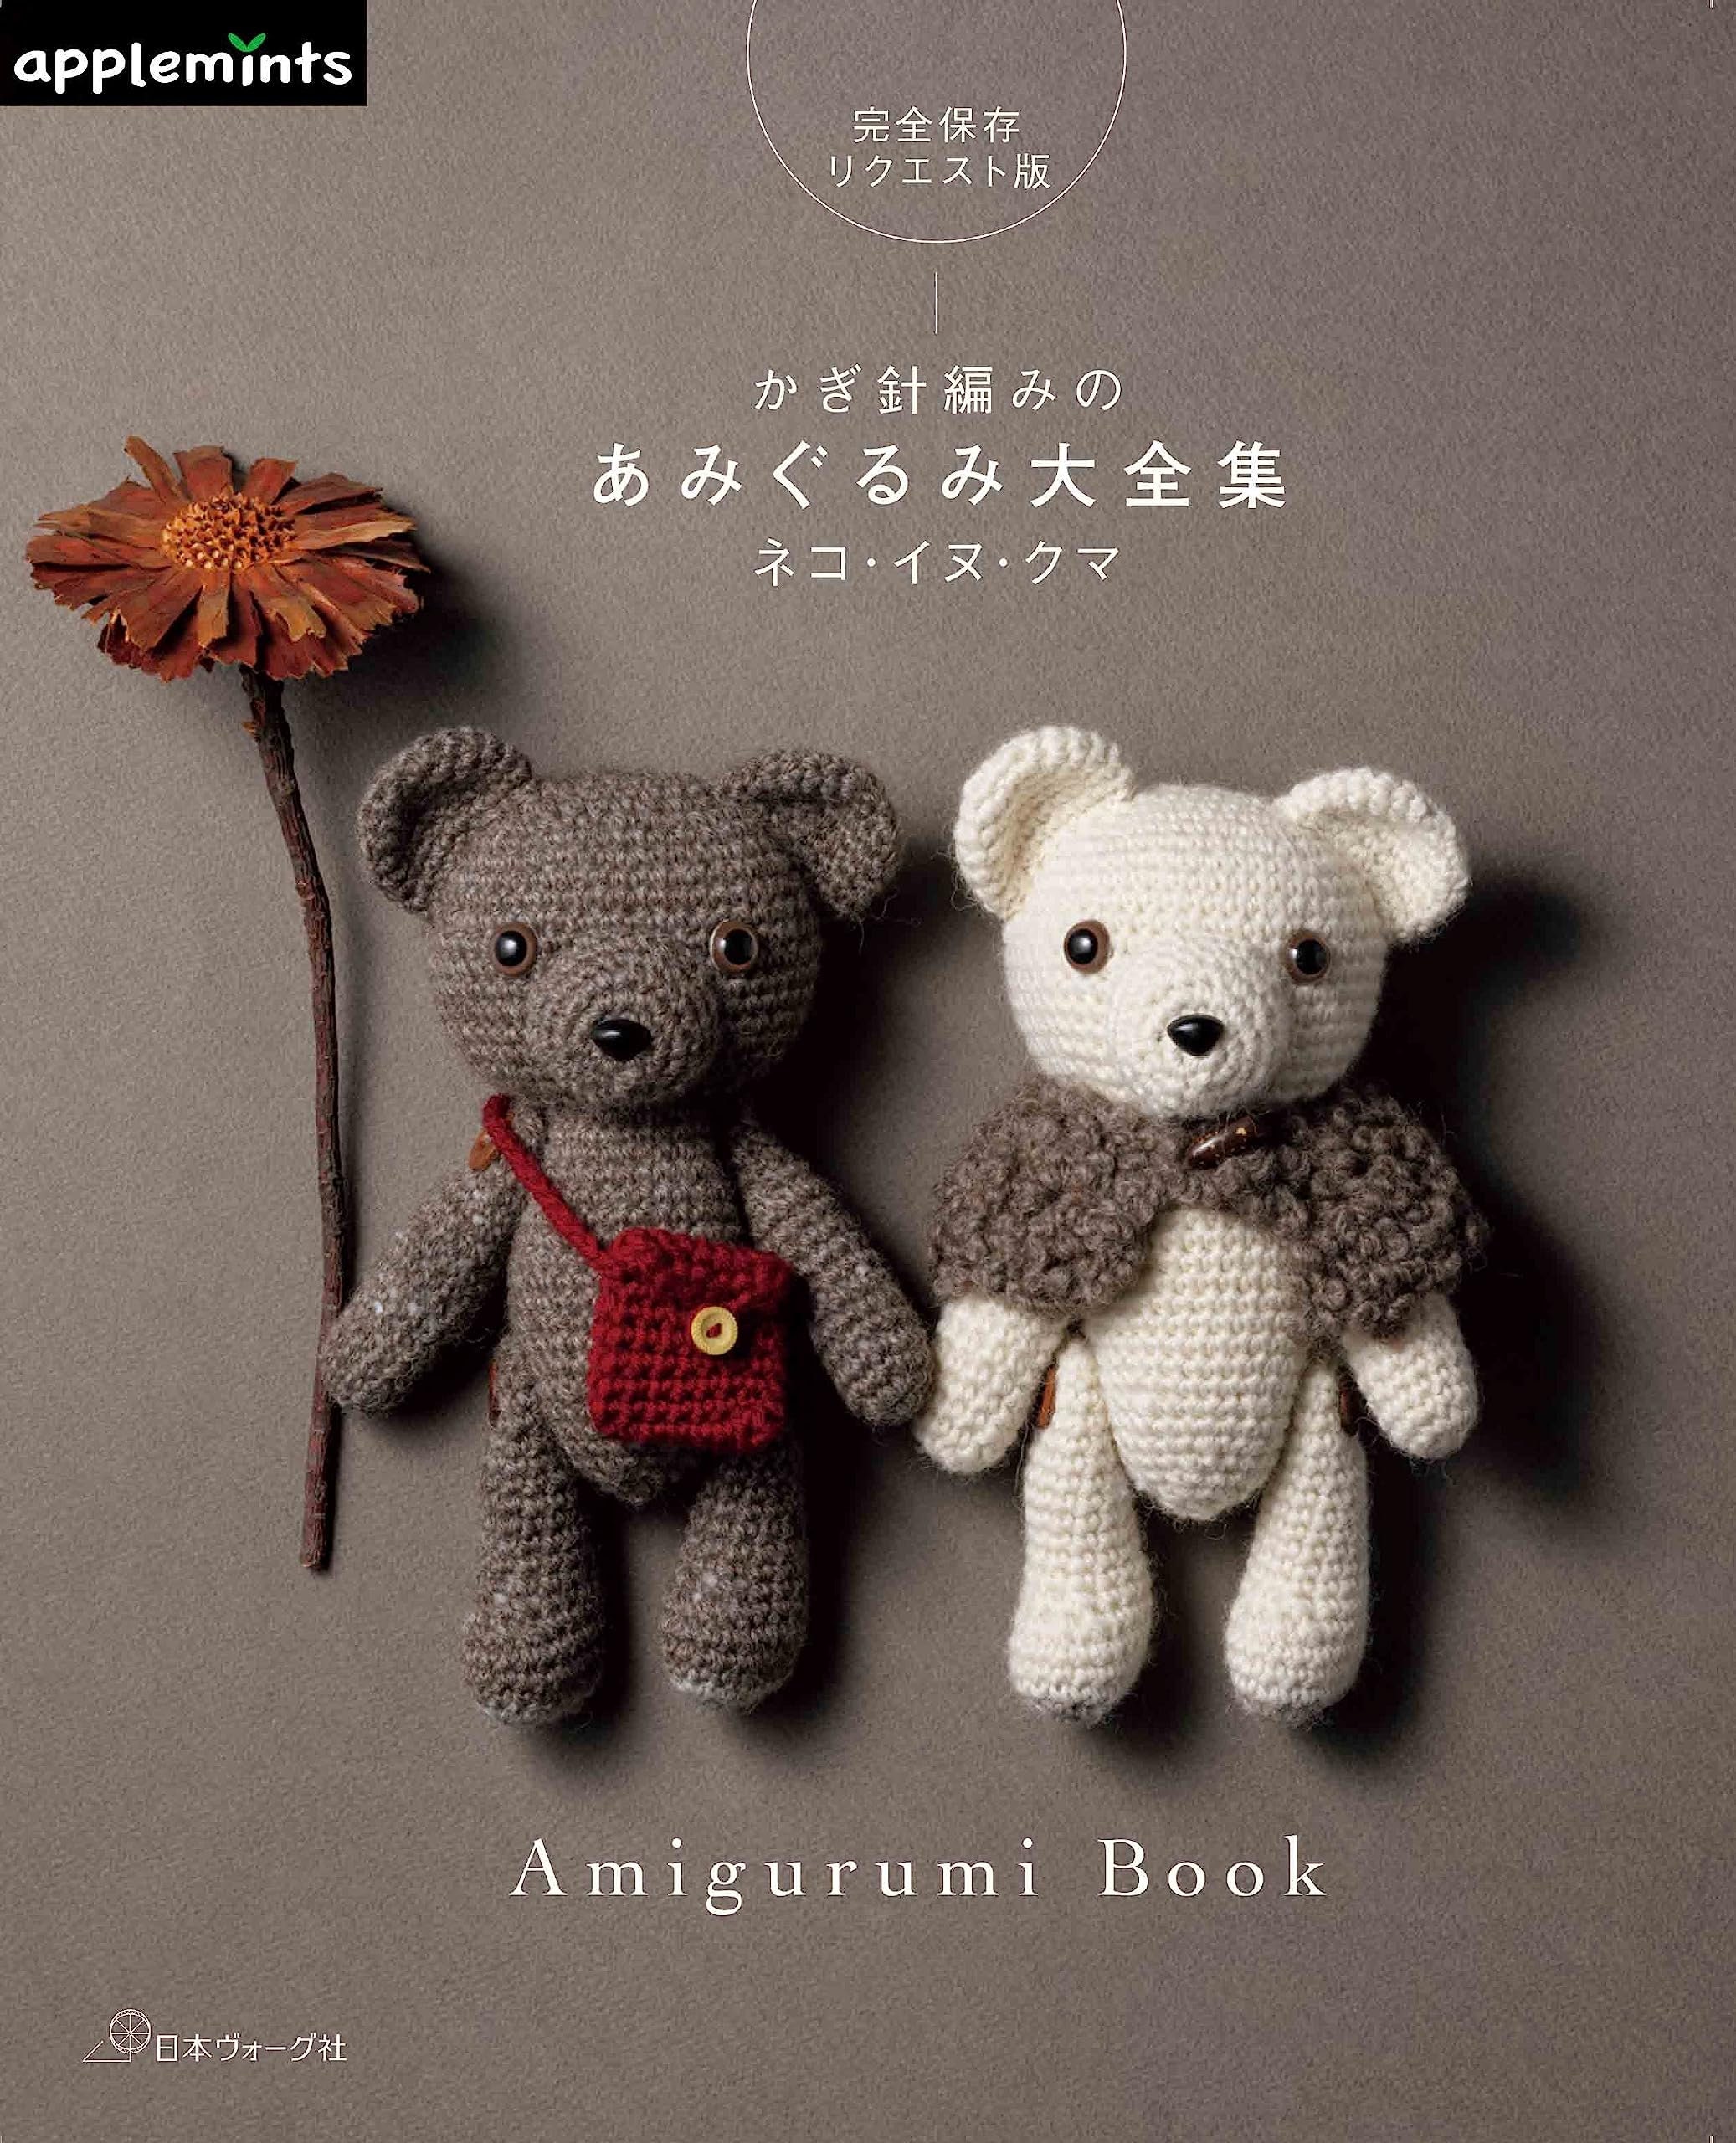 Amigurumi Treasures PDF Book by Amigurumi Designer Erinna Lee 